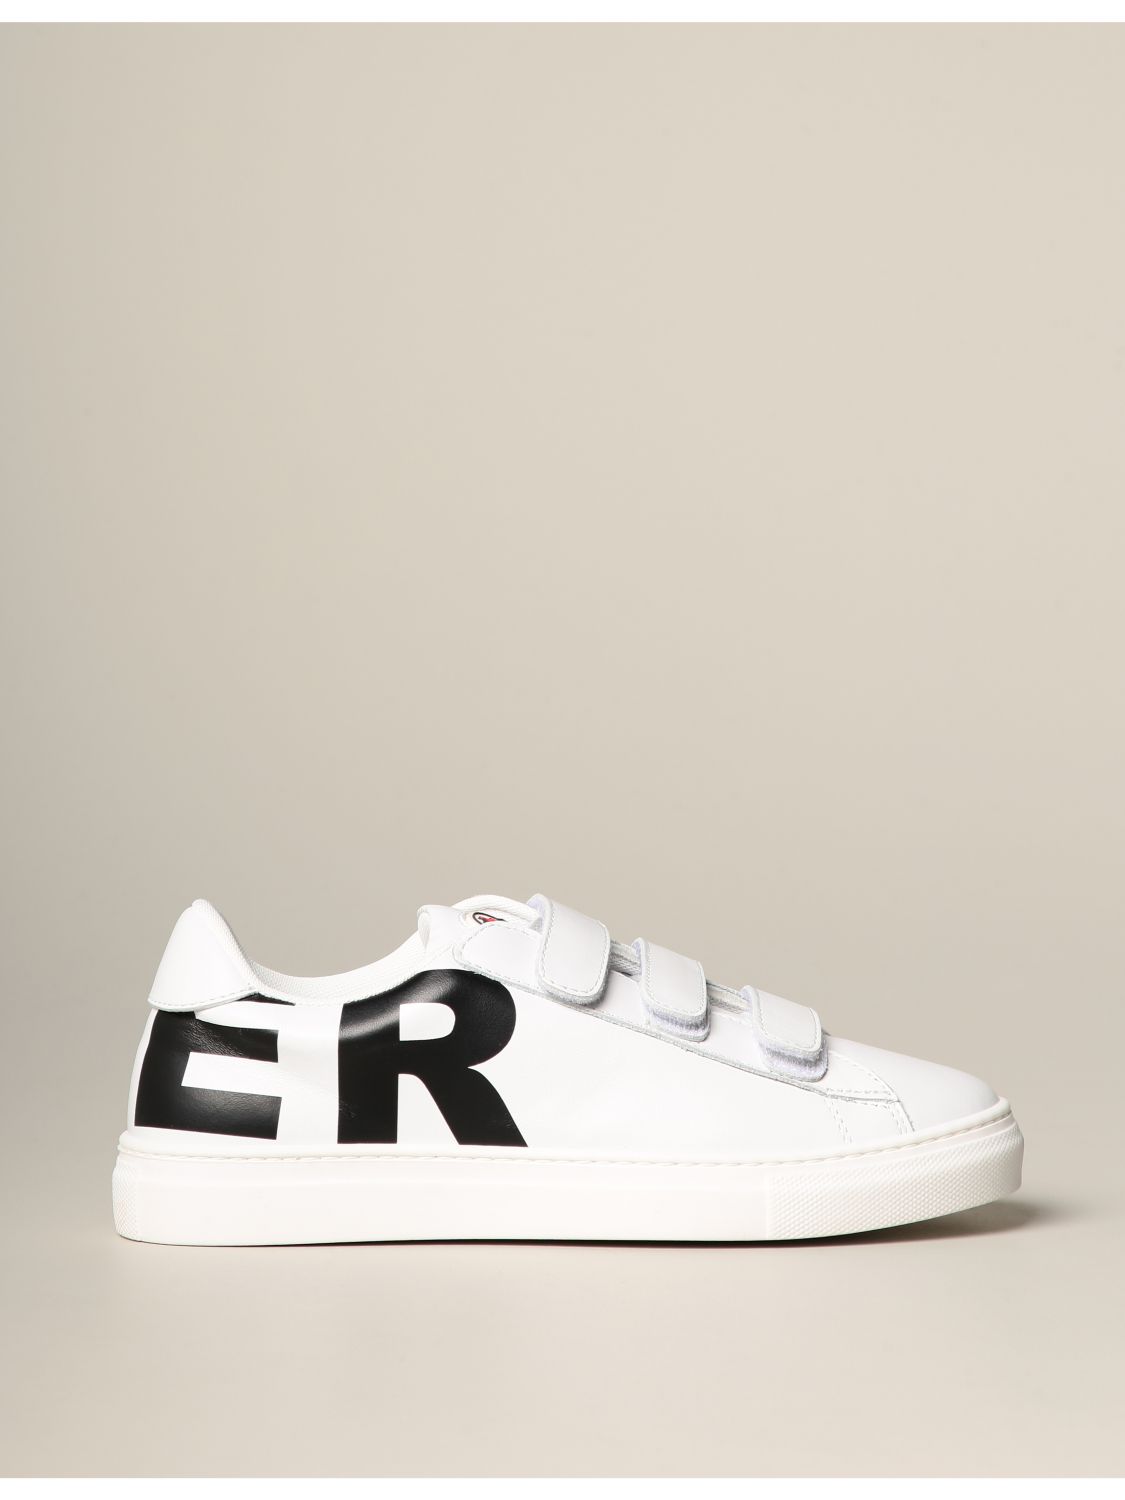 Sneakers Moncler in pelle con big logo | Scarpe Moncler Bambino Bianco | Scarpe  Moncler F19544M70420 01AD1 Giglio IT